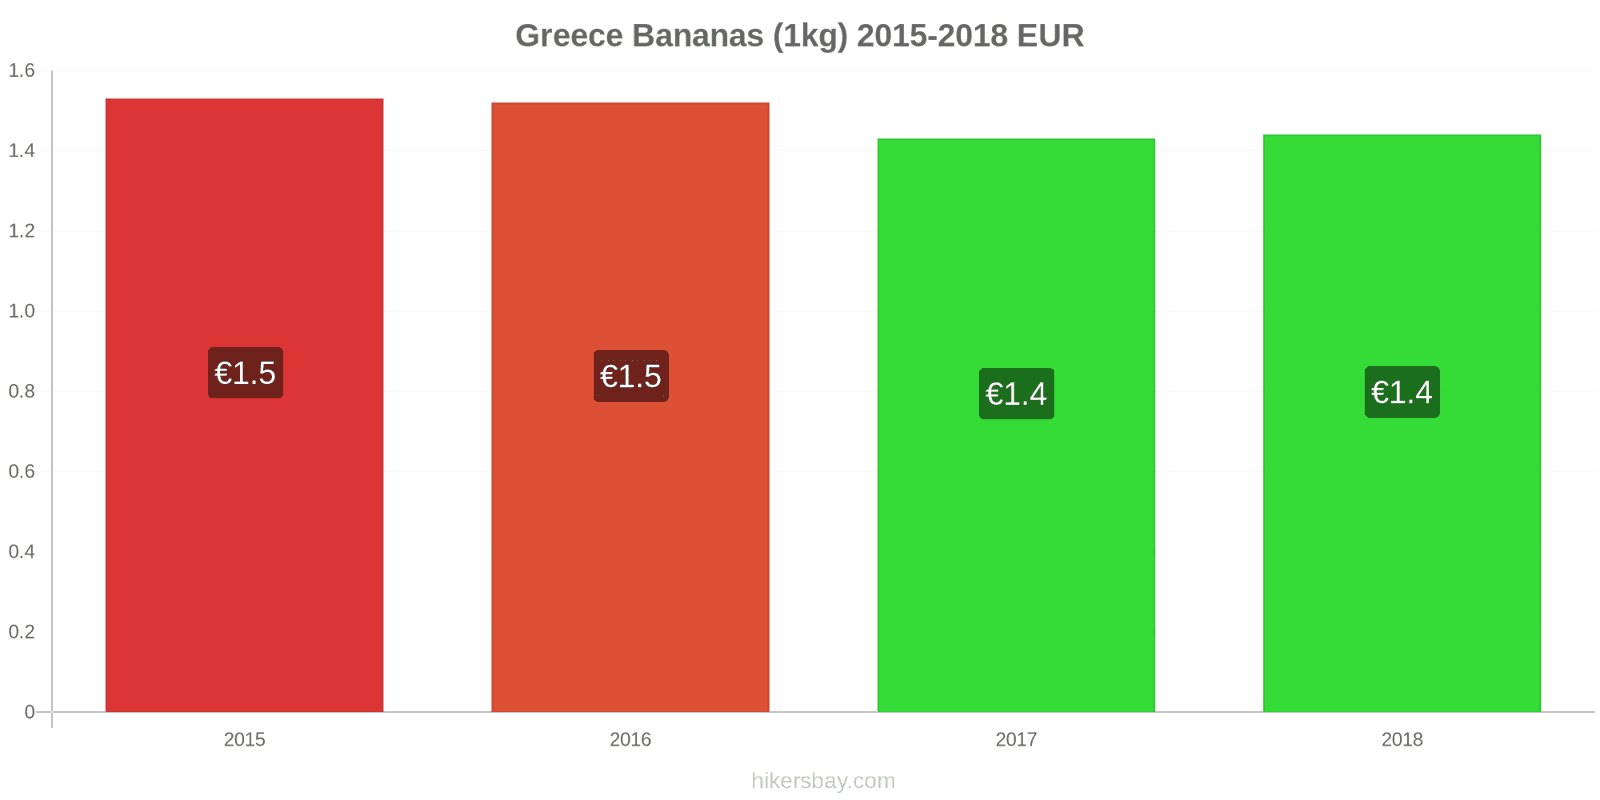 Greece price changes Bananas (1kg) hikersbay.com